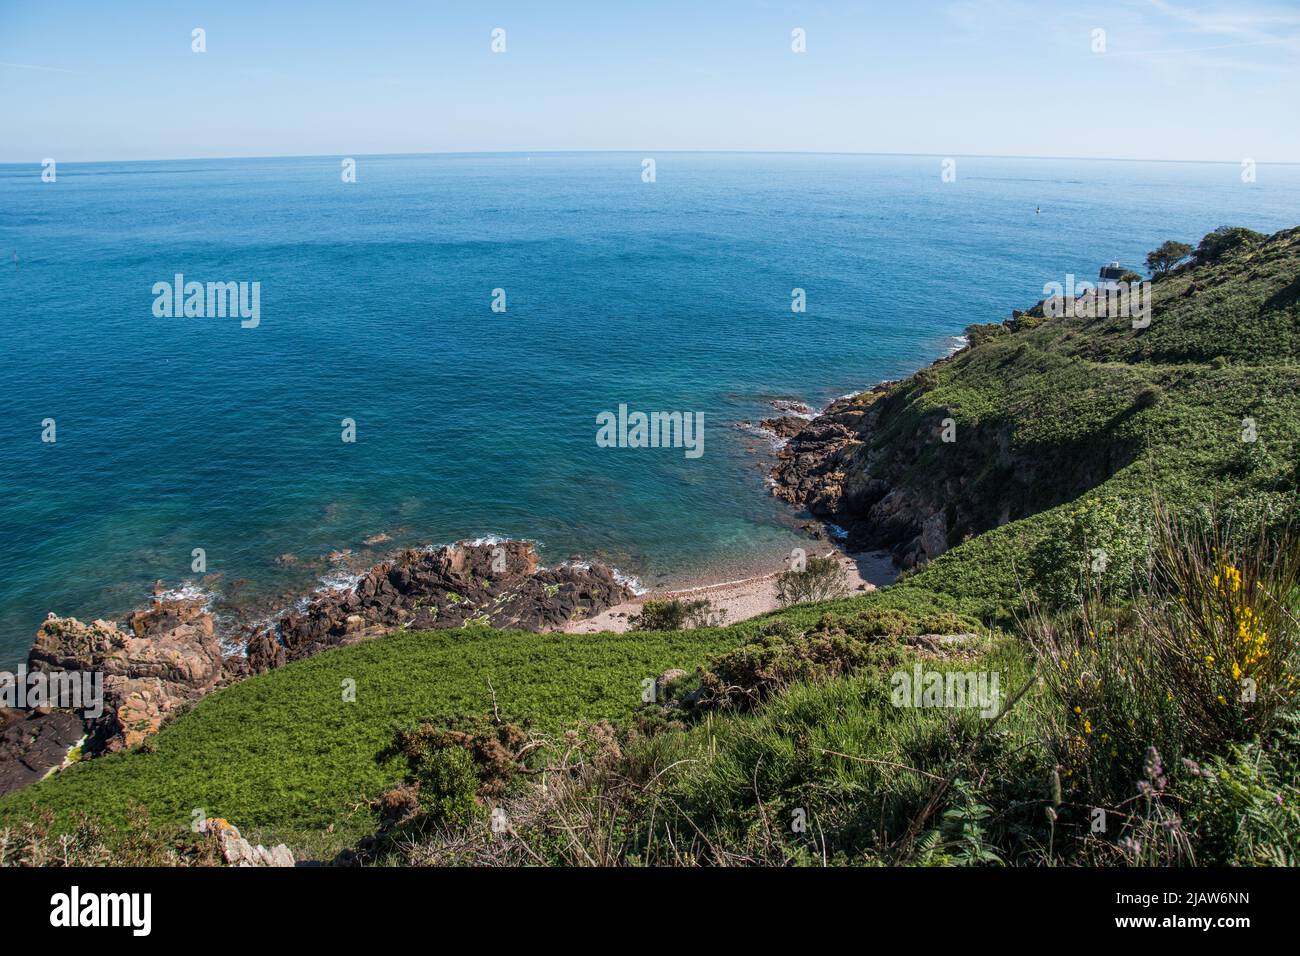 Paysages et nature Île de Jersey - Île de la Manche - Kanalinsen Photo  Stock - Alamy